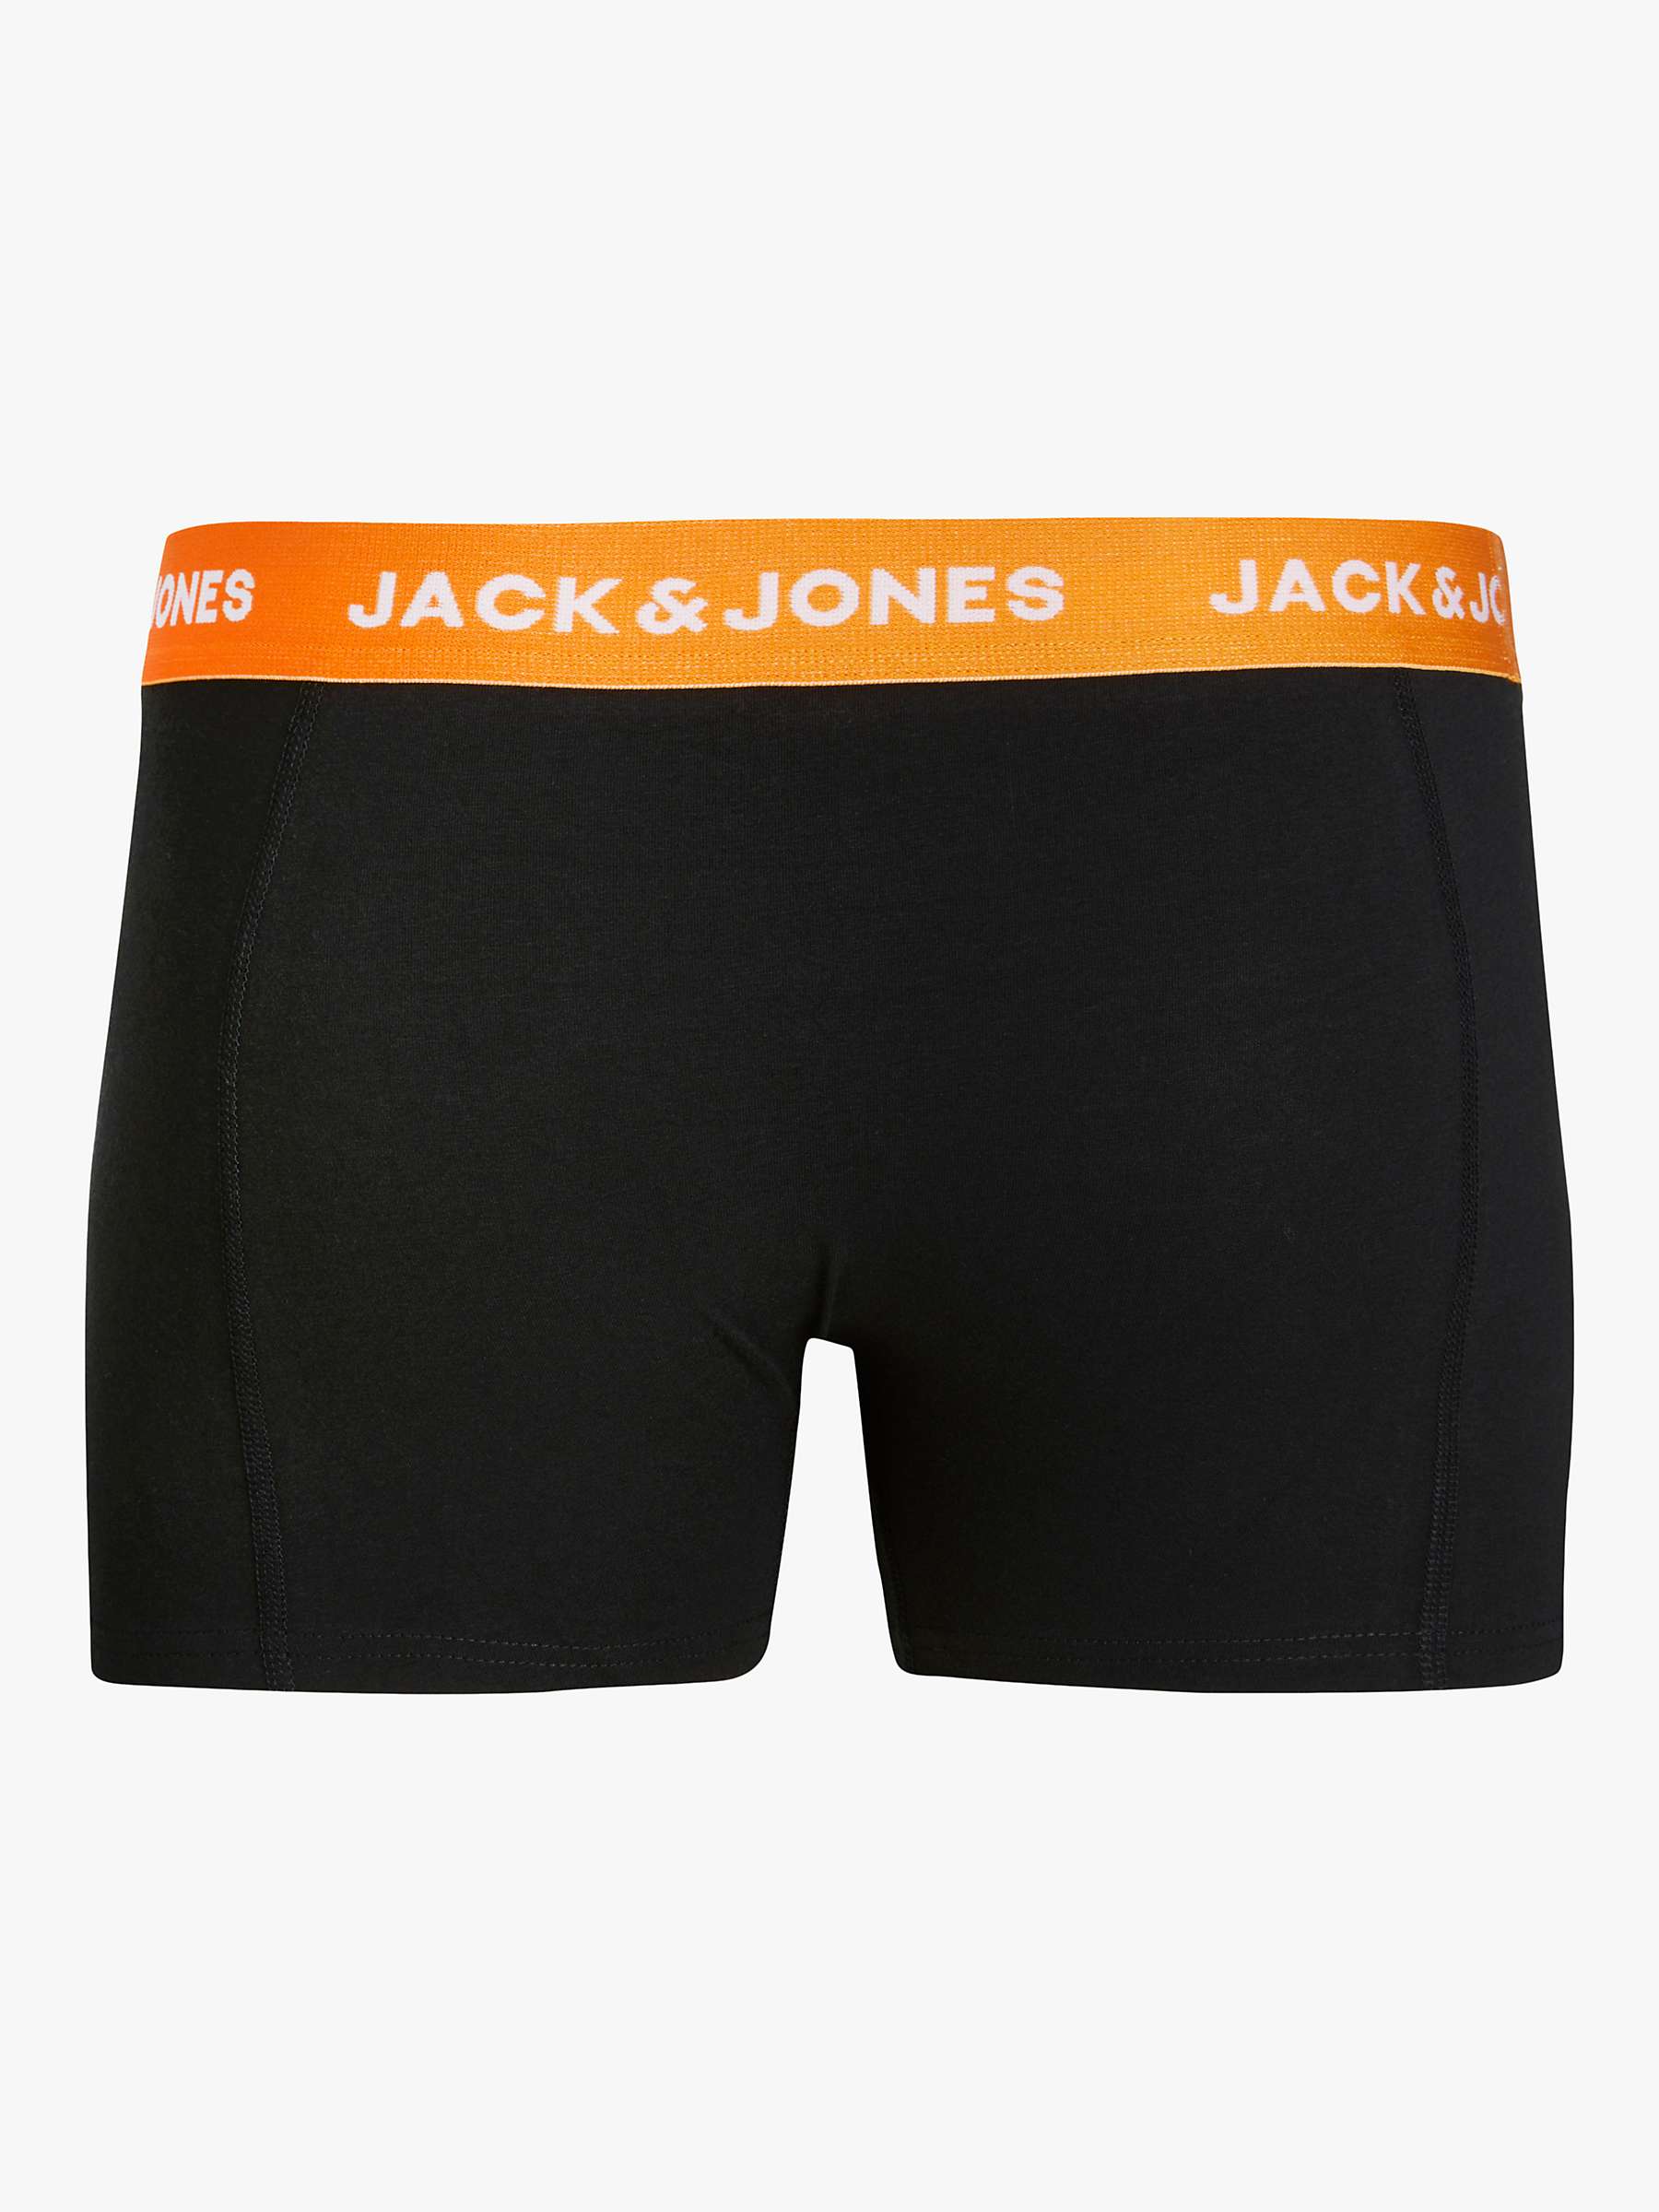 Buy Jack & Jones Kids' Logo Trunks, Pack of 3, Green/Back/Multi Online at johnlewis.com